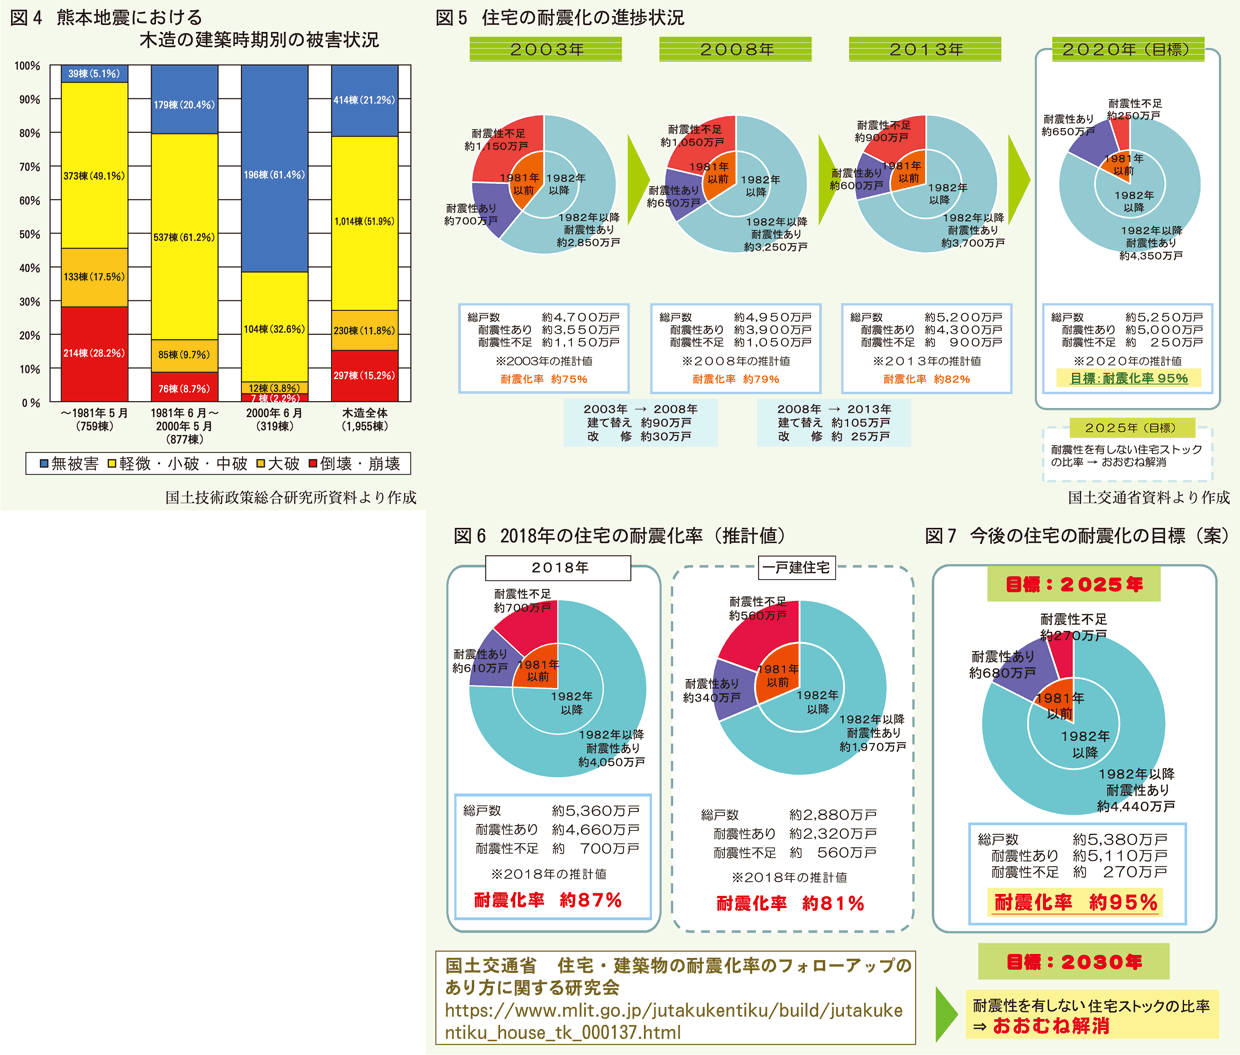 図4熊本地震被害状況図5図6耐震化